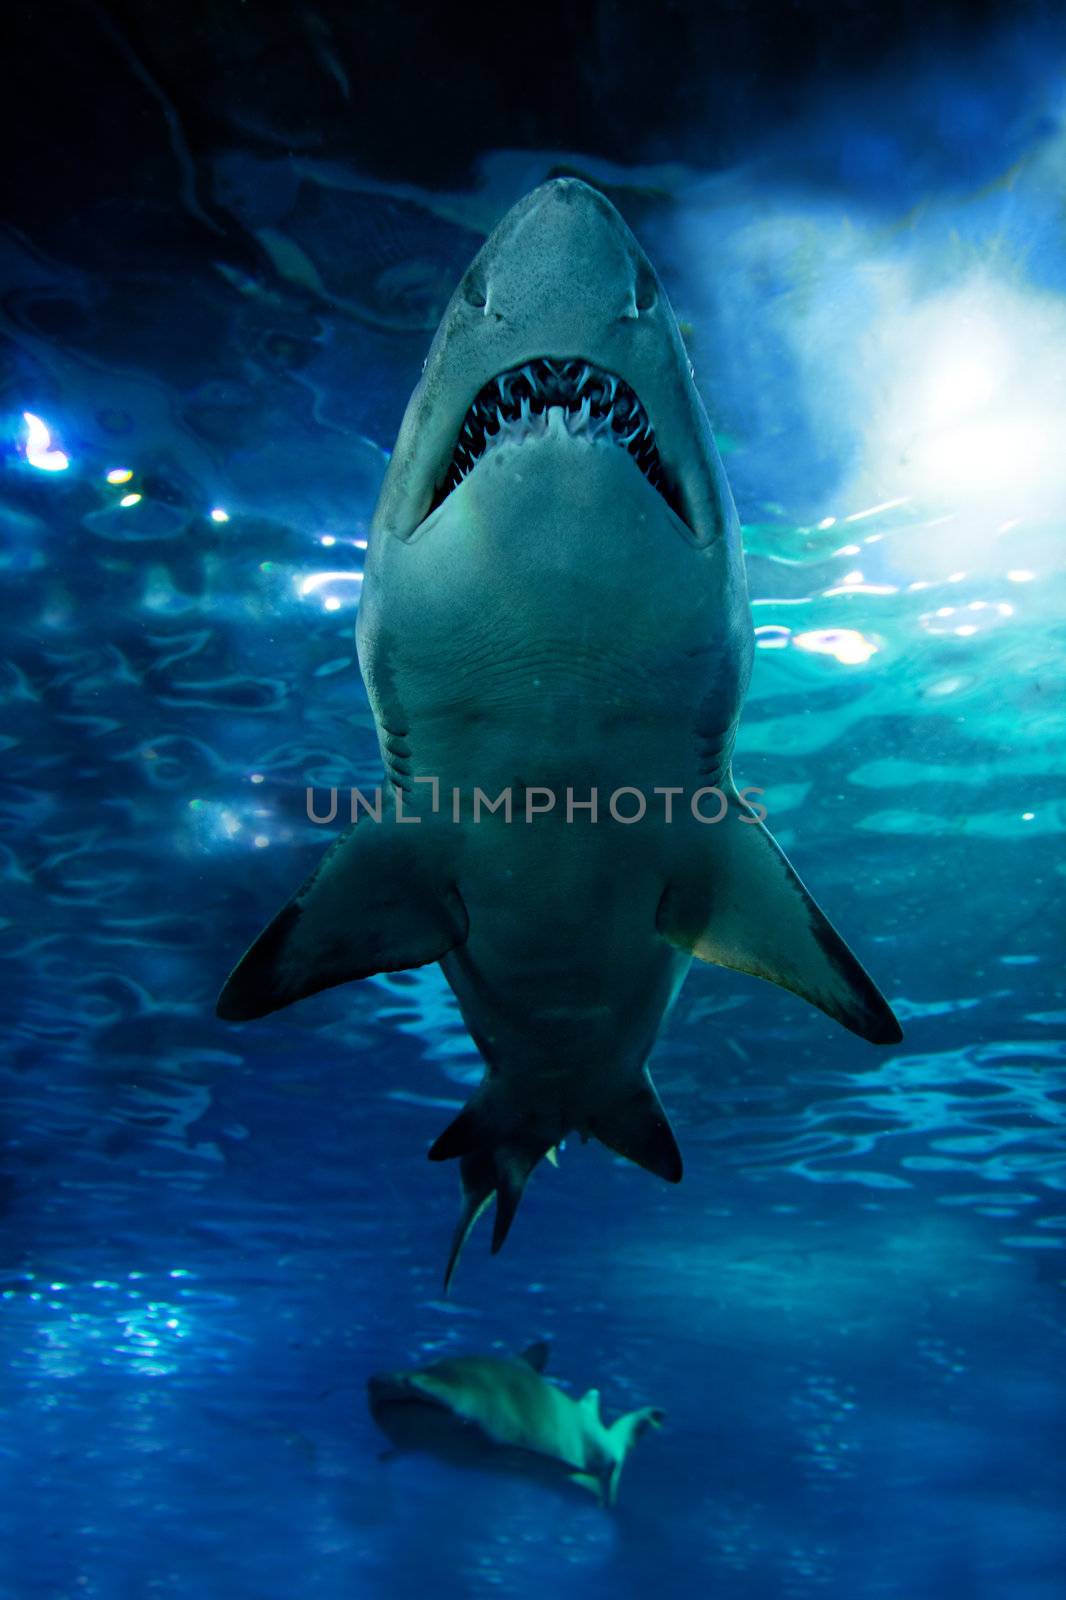 Shark silhouette underwater. Danger concept